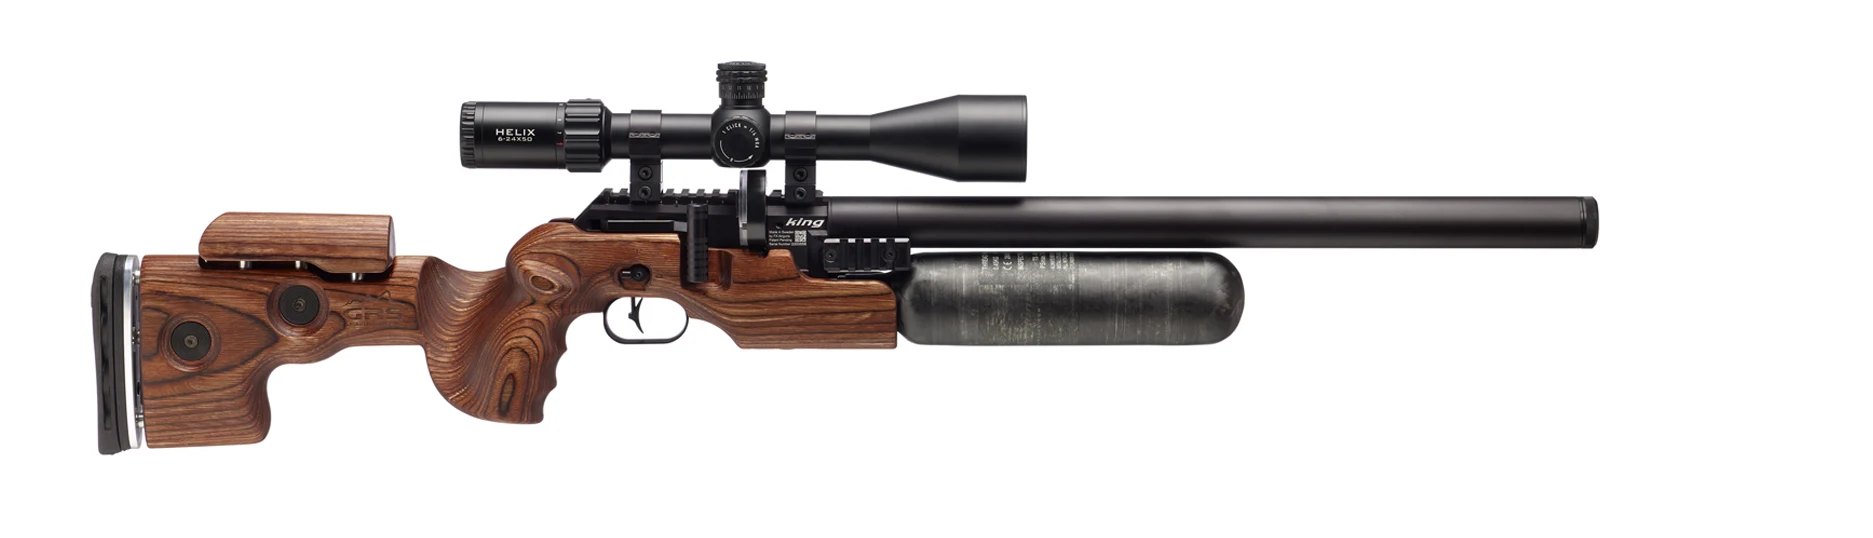 FX Airguns Brown 500mm